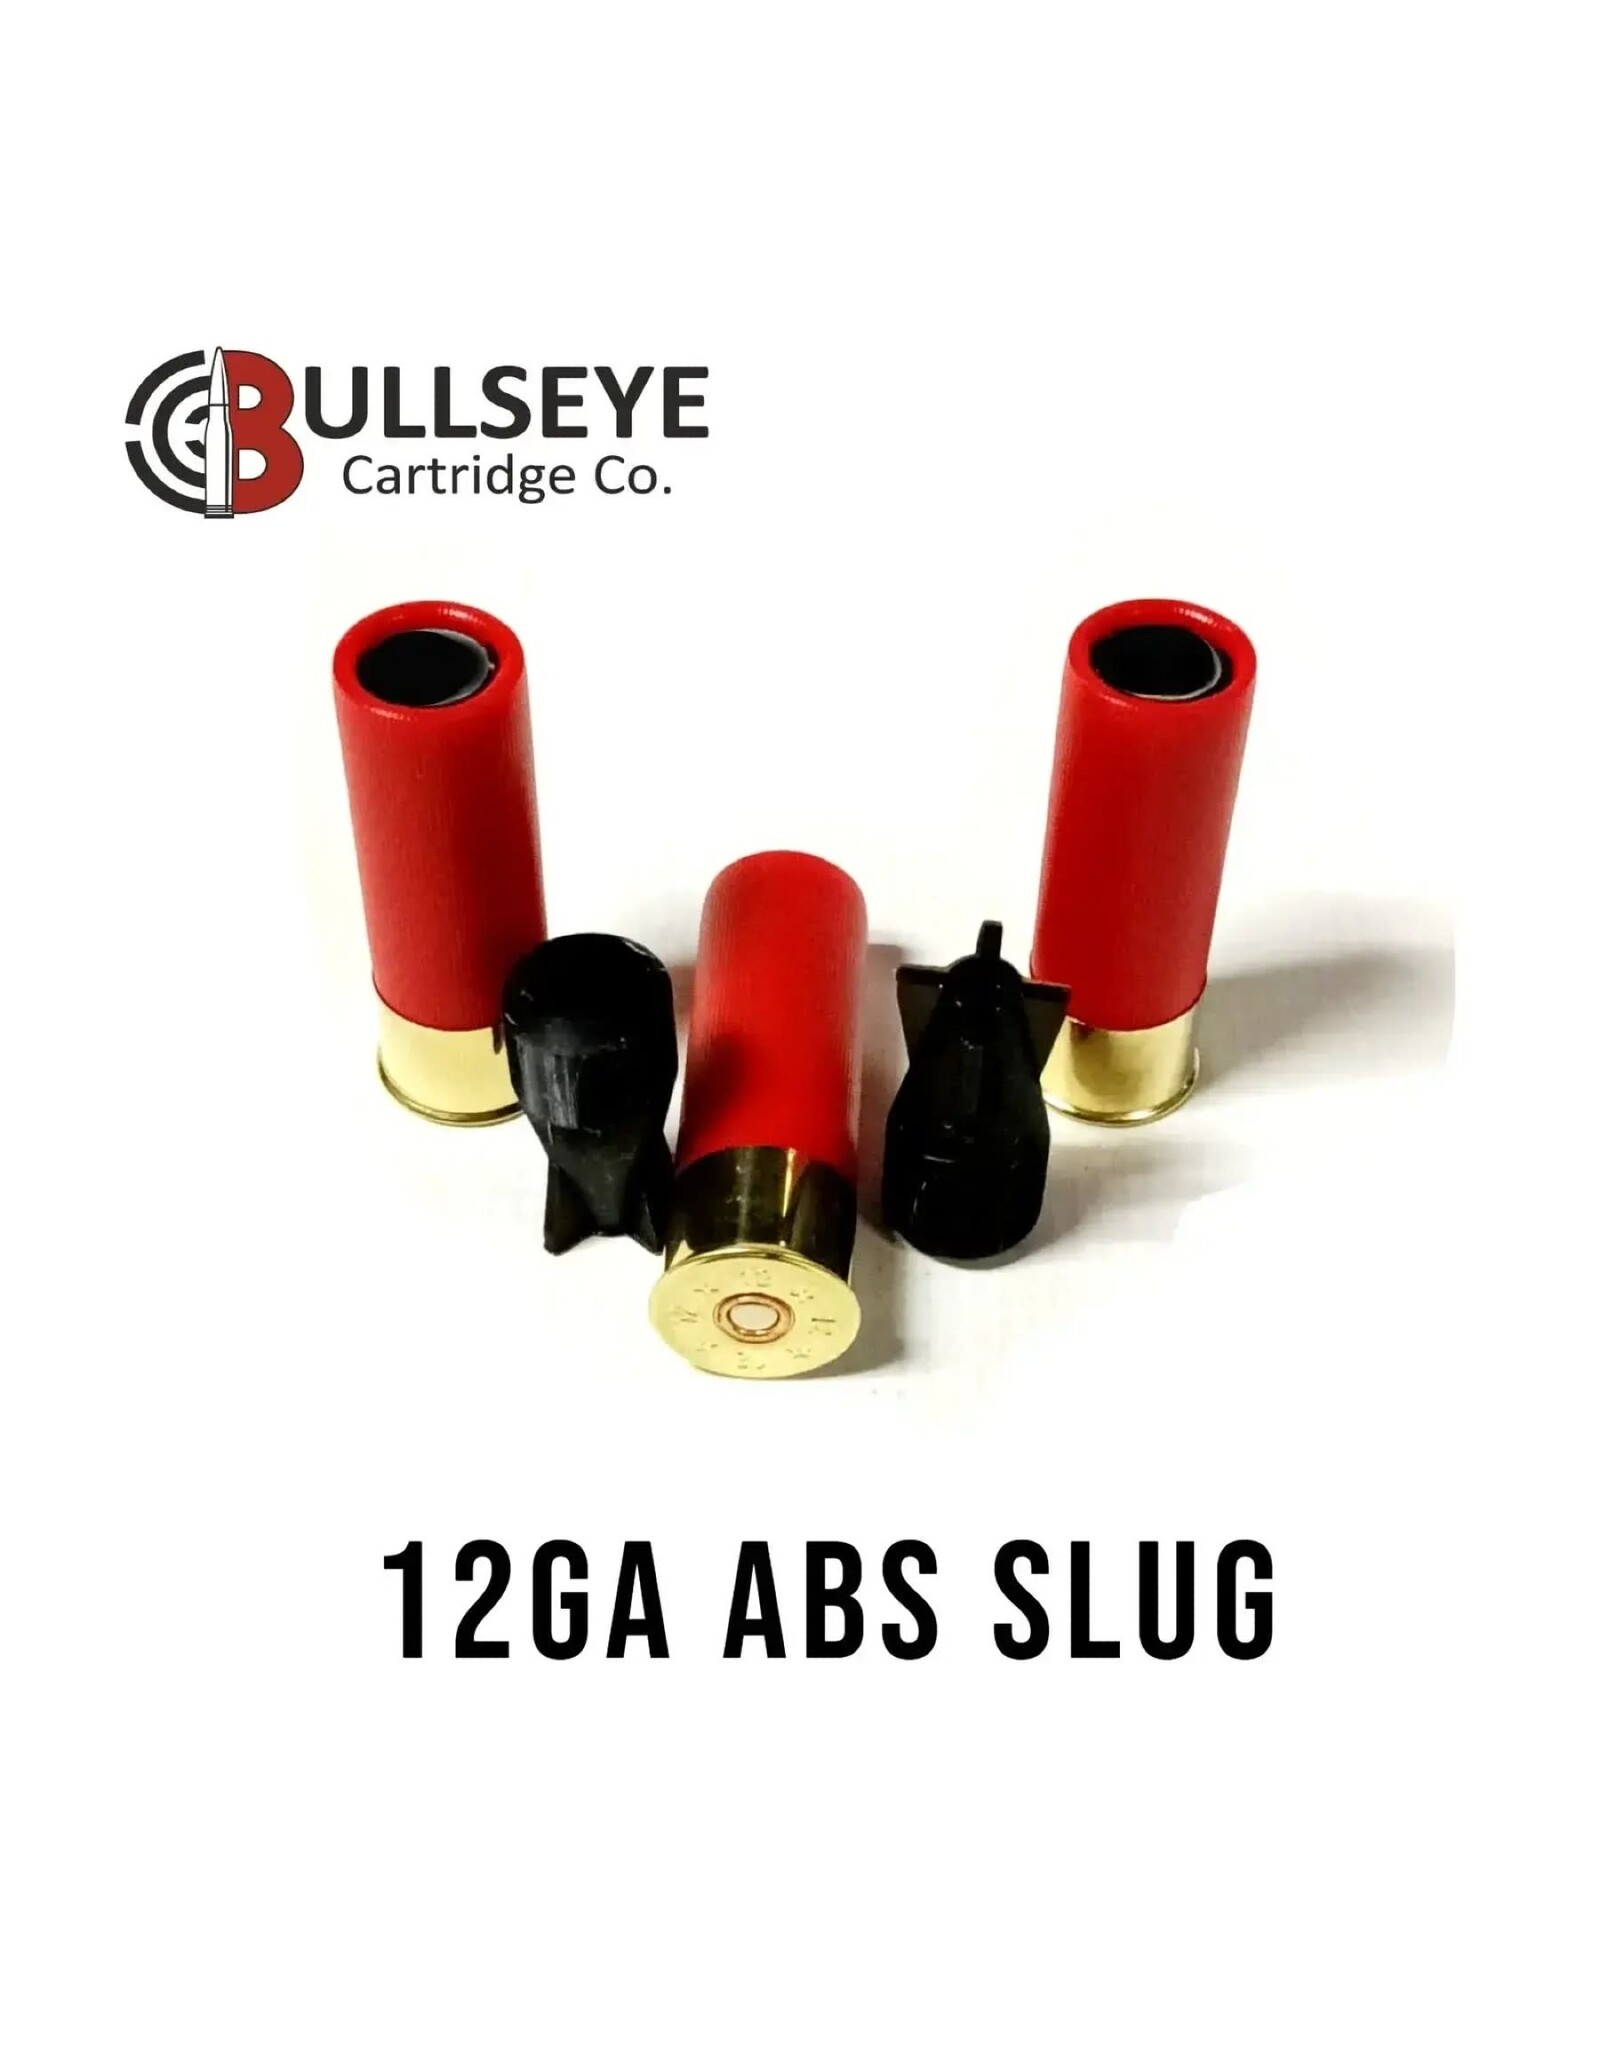 12ga 2 3/4" - ABS SLUG - 5